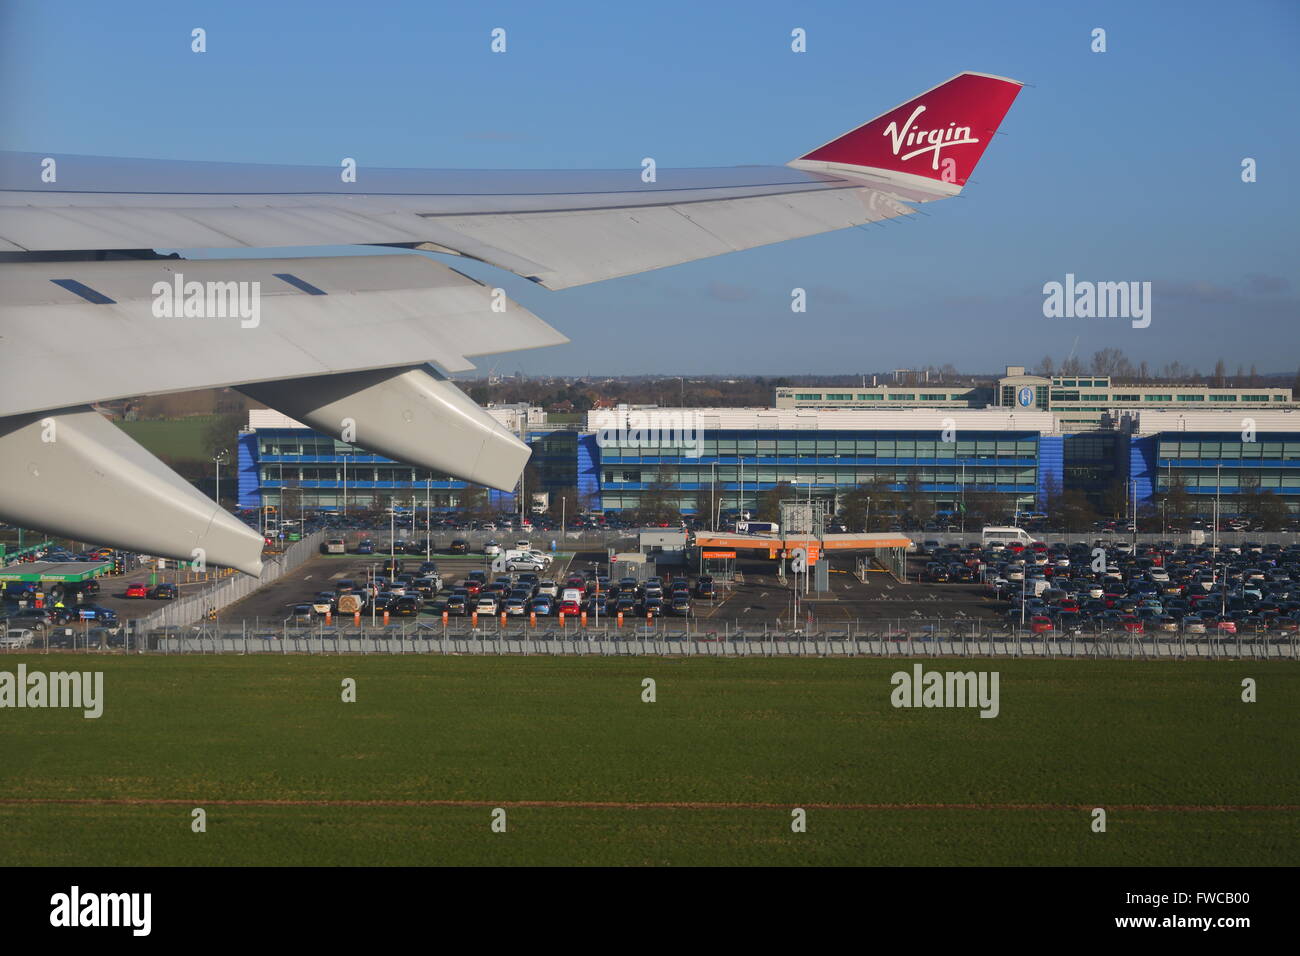 Virgin Atlantic Airbus 330-300, au départ de l'aéroport Heathrow de Londres, UK Banque D'Images